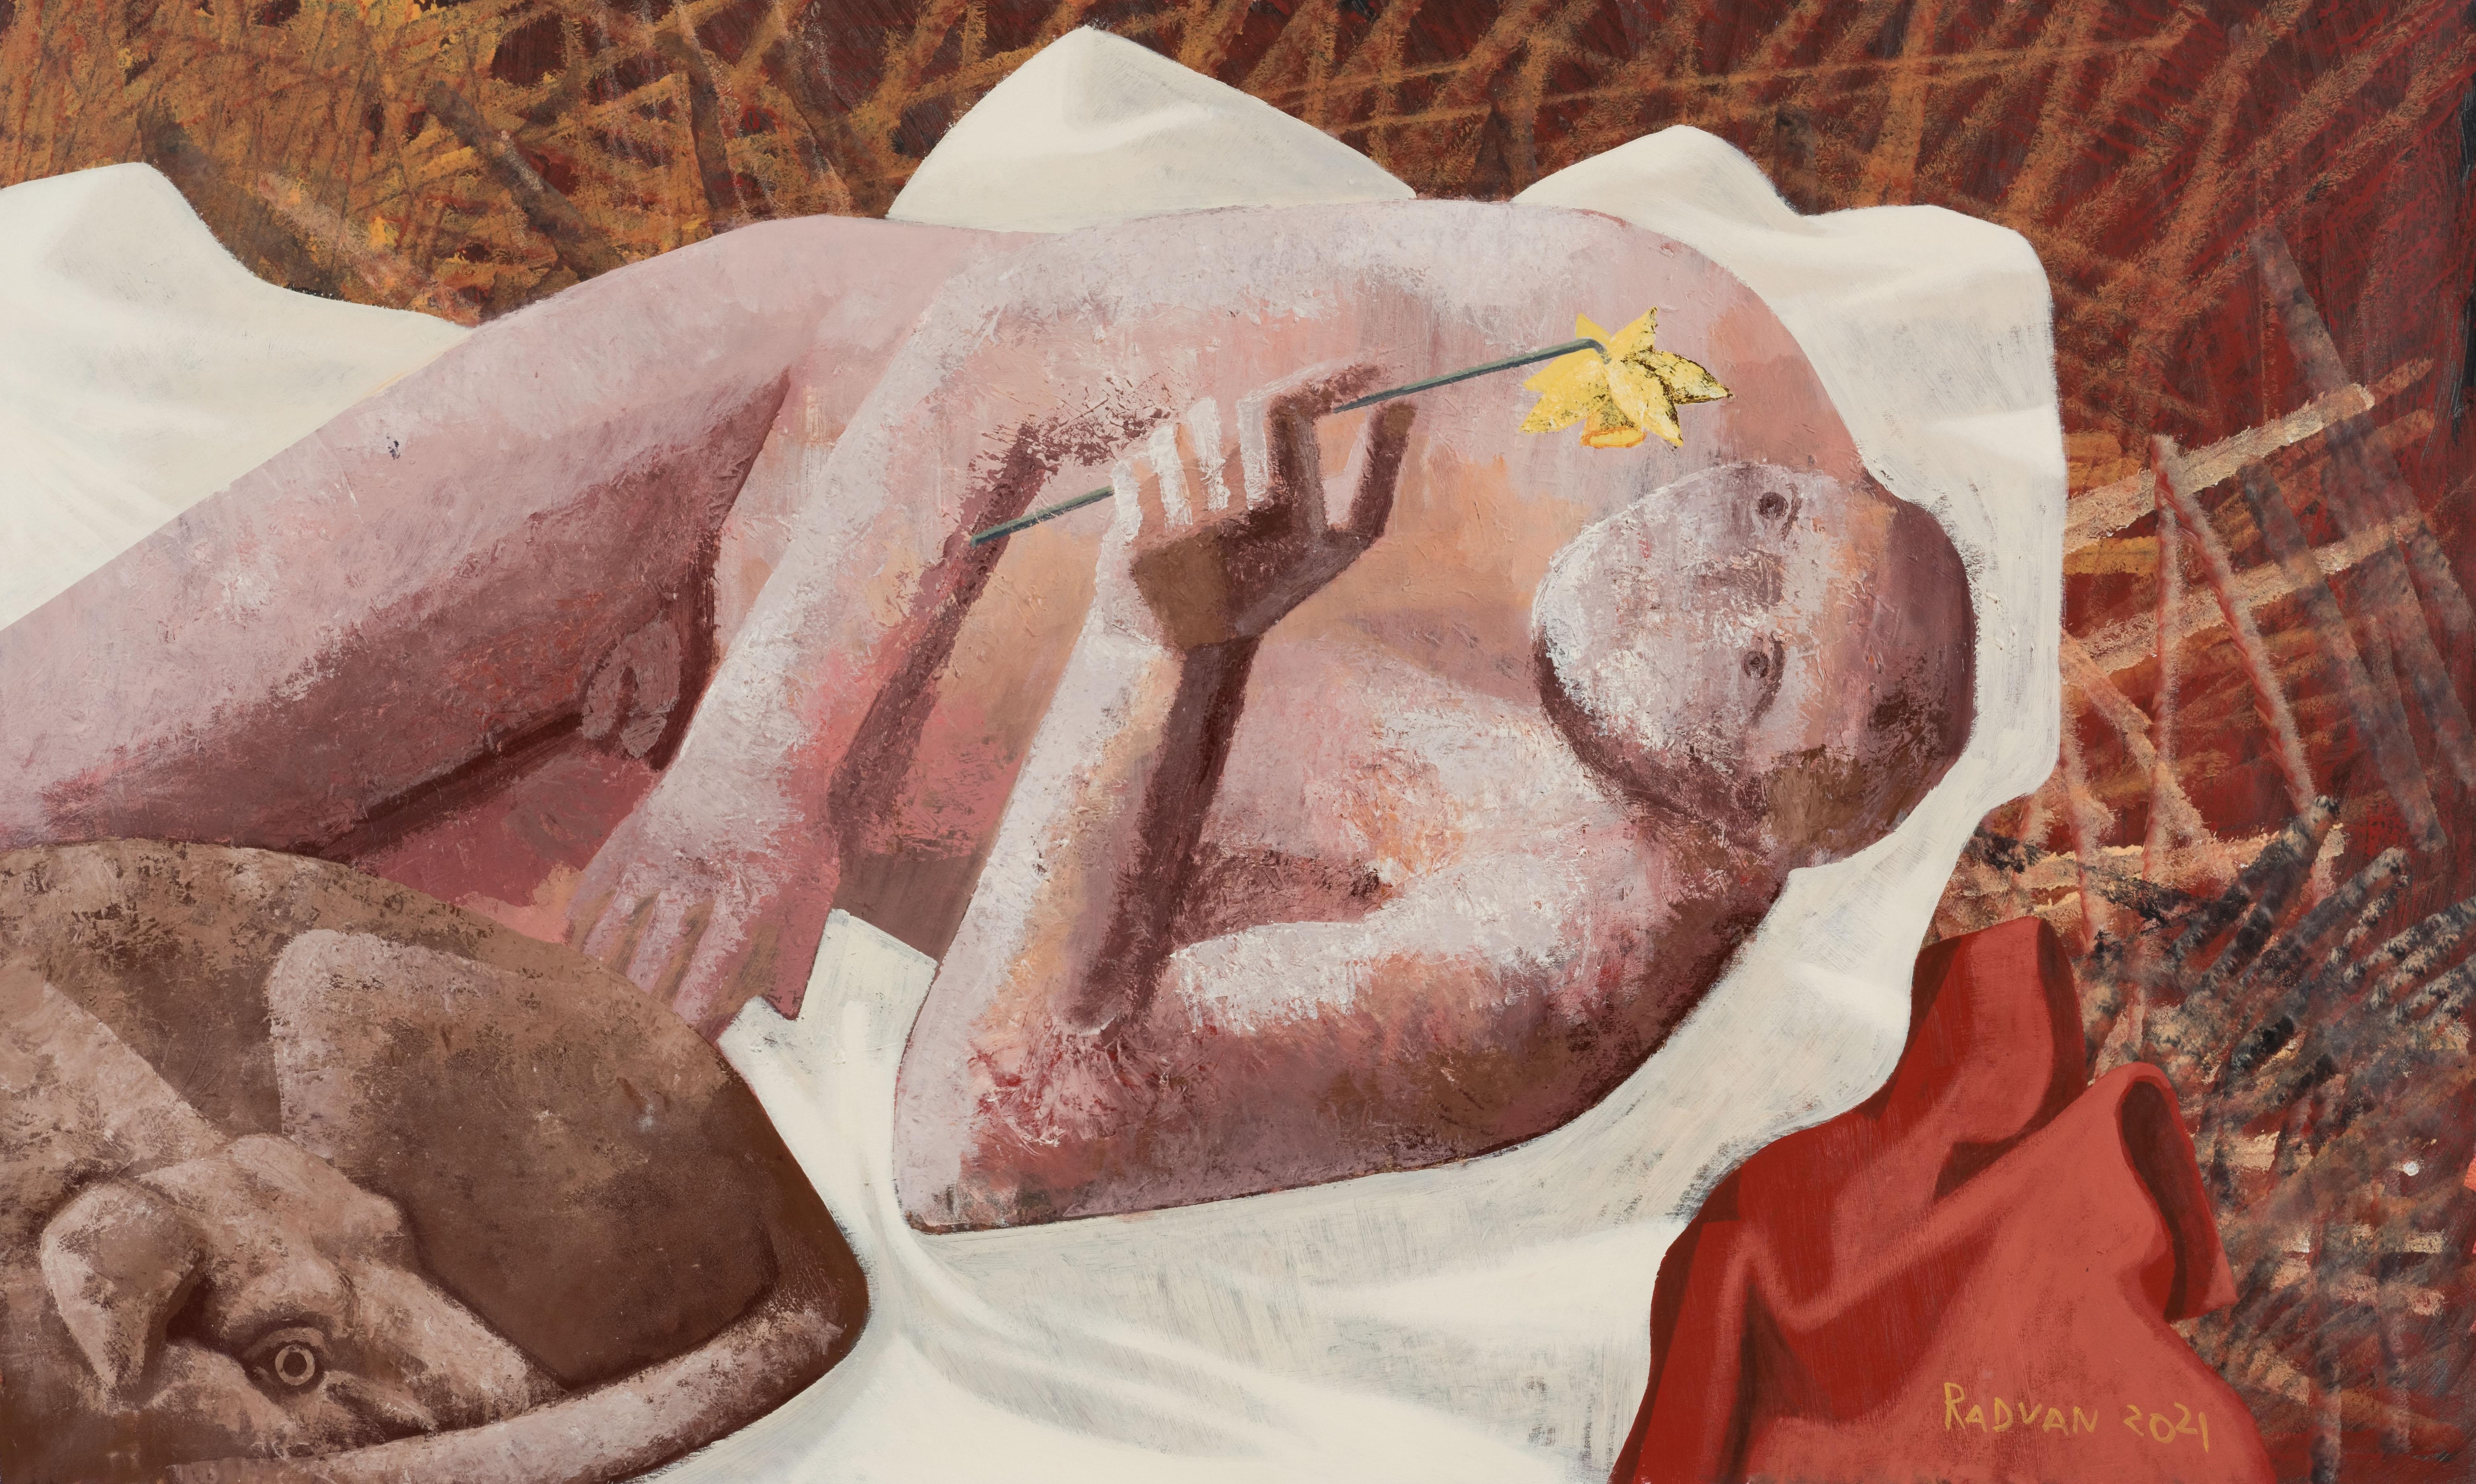 Alexandru Rădvan Nude Painting - Cerberus 4 - Contemporary Art, Nude, Dog, Flower, Male, Figurative Painting